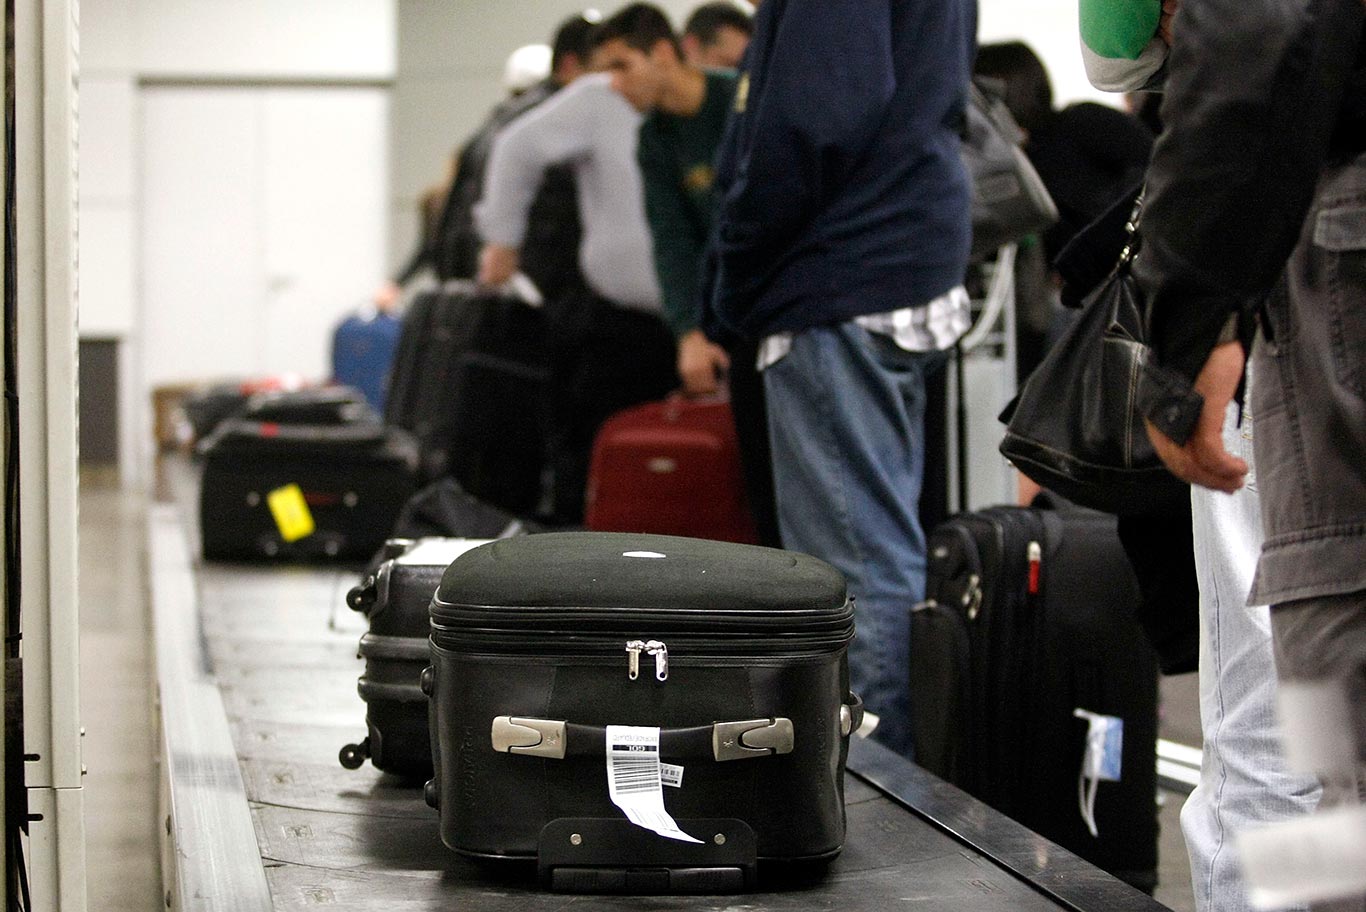 Companhias aéreas já estão autorizadas a cobrar por bagagens despachadas